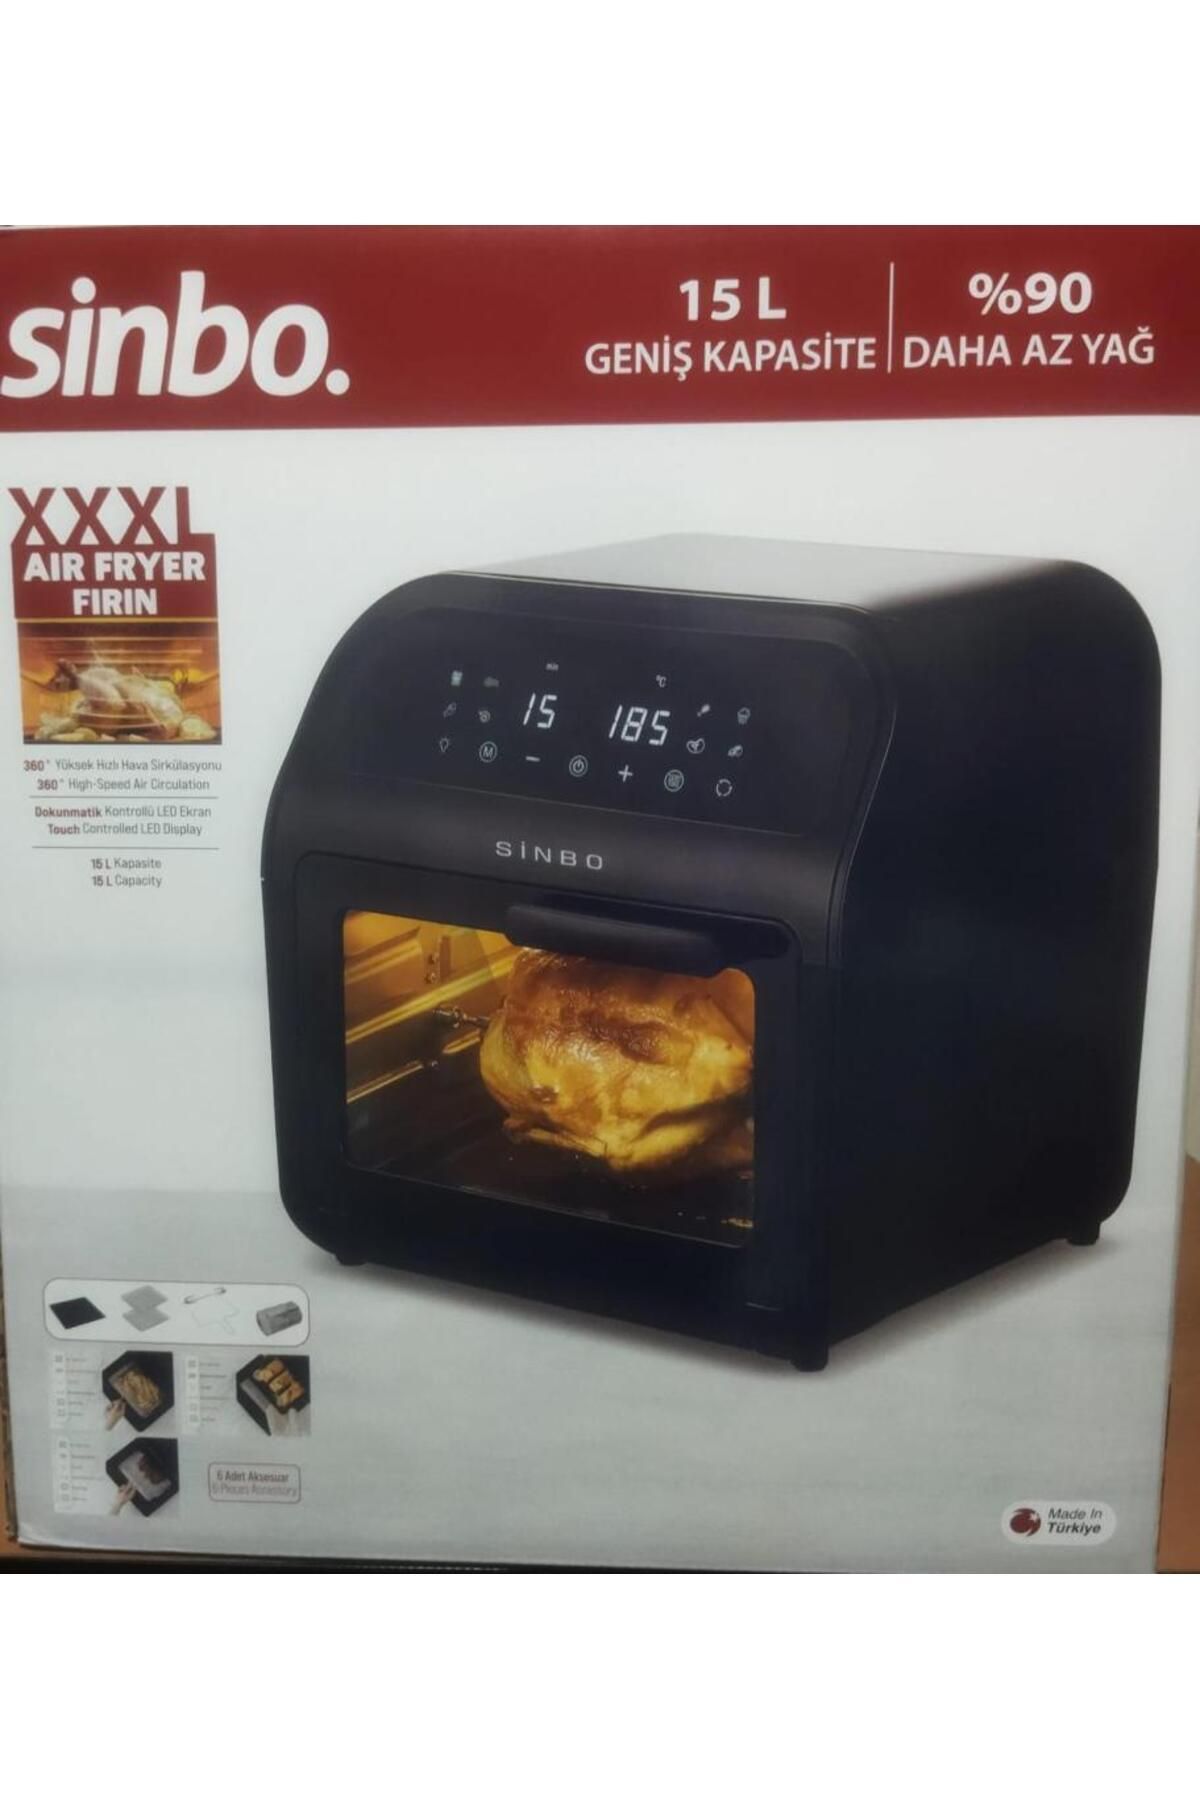 Sinbo XXXL Aır Fryer